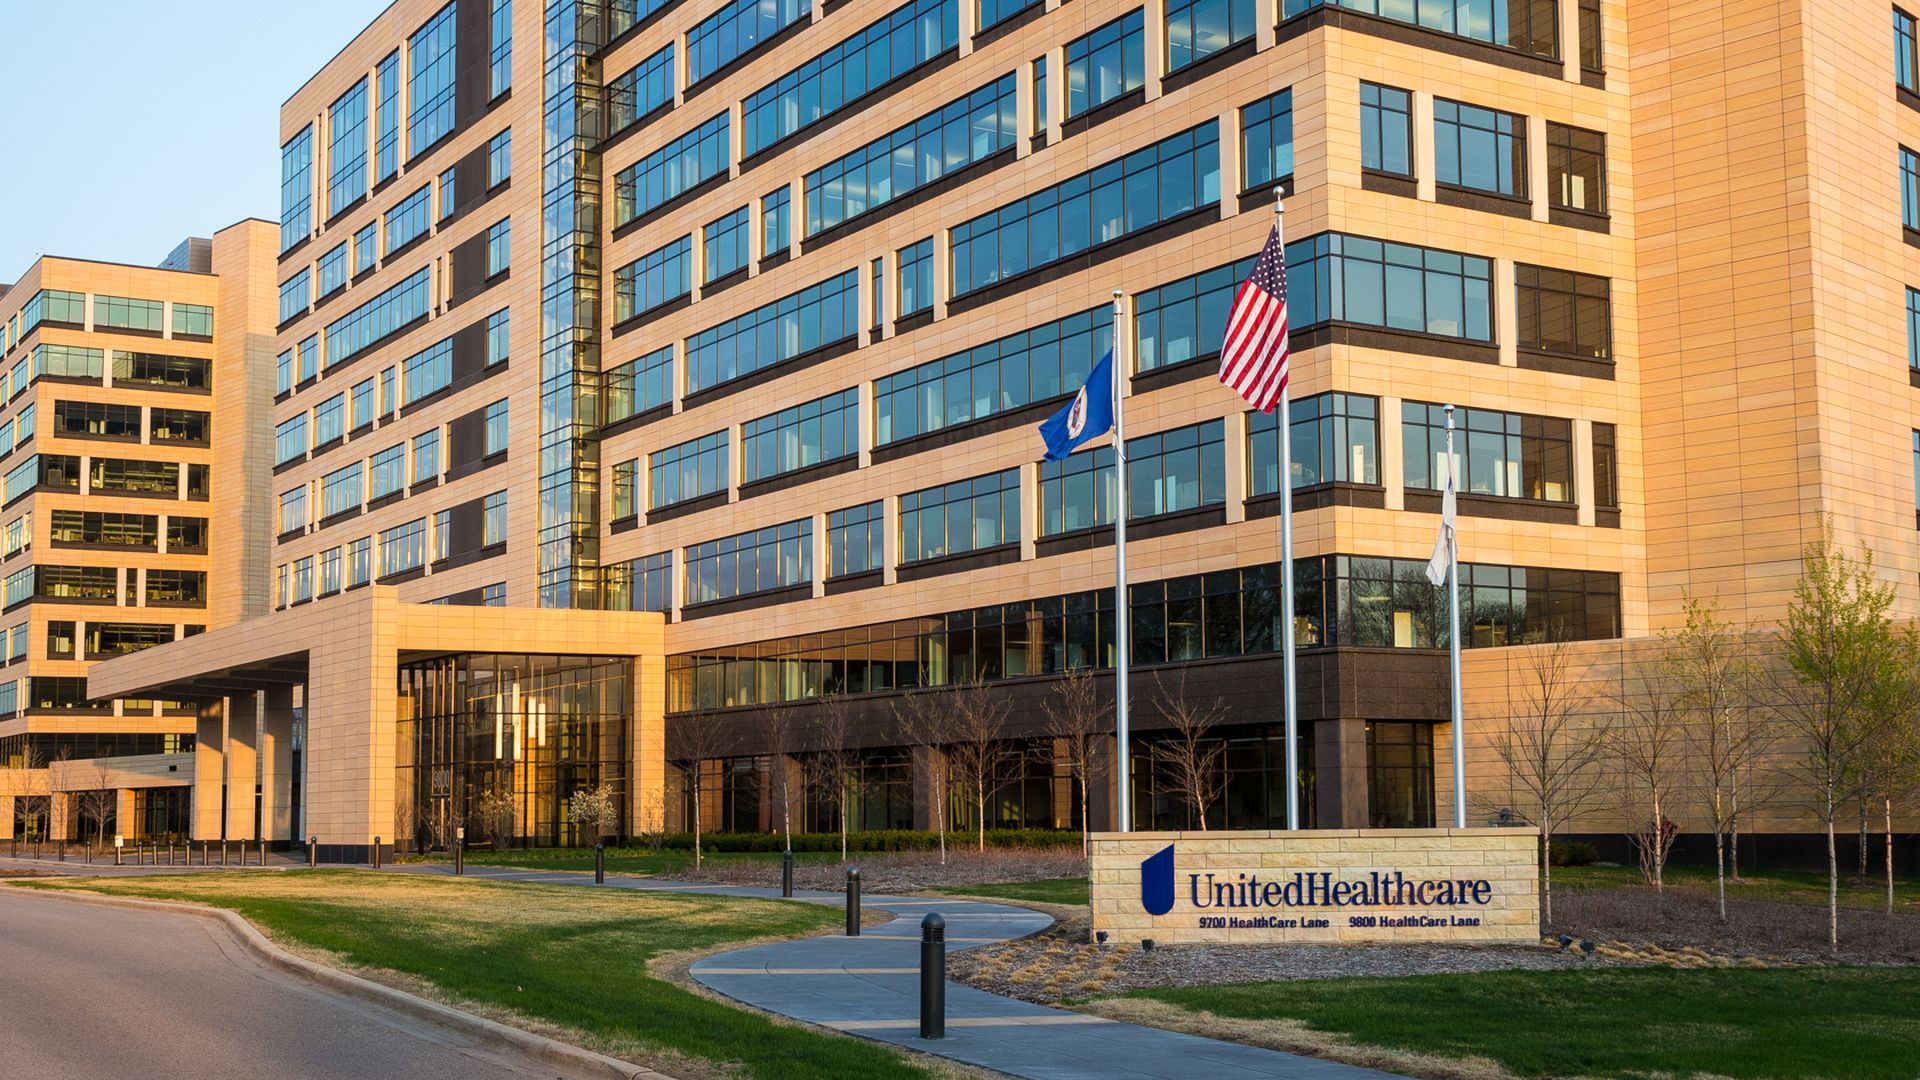 UnitedHealthcare headquarters building in Minnesota.